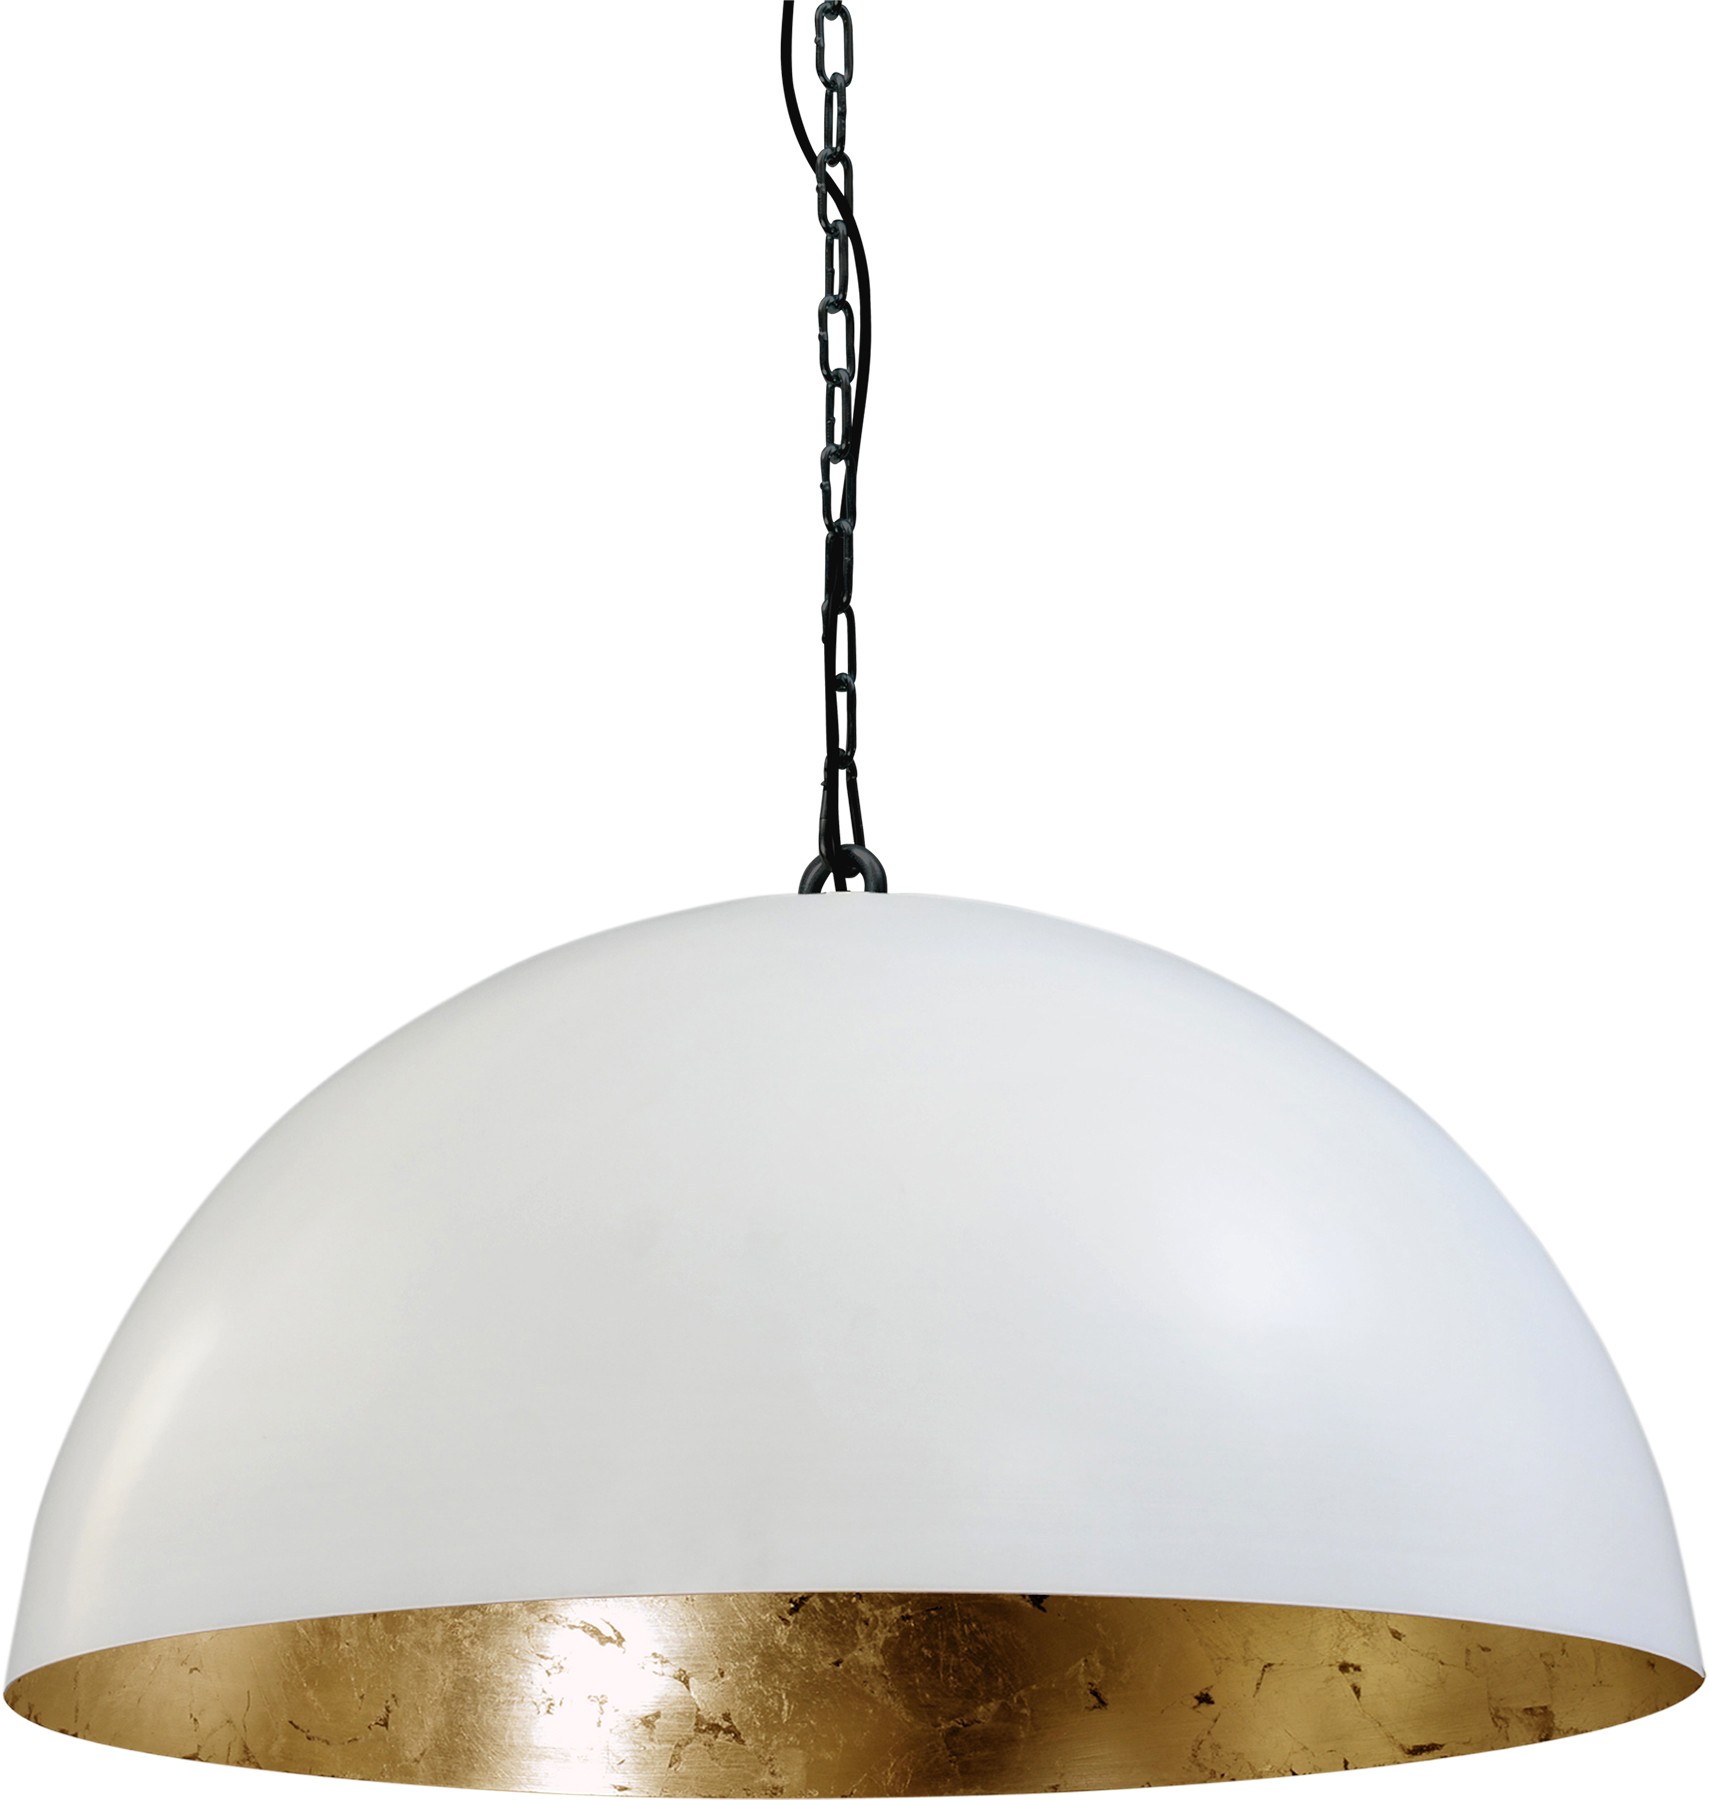 Pendelleuchte gold-weiß, Industrielampe/ Retro-style, Schirm-Ø: 80 cm